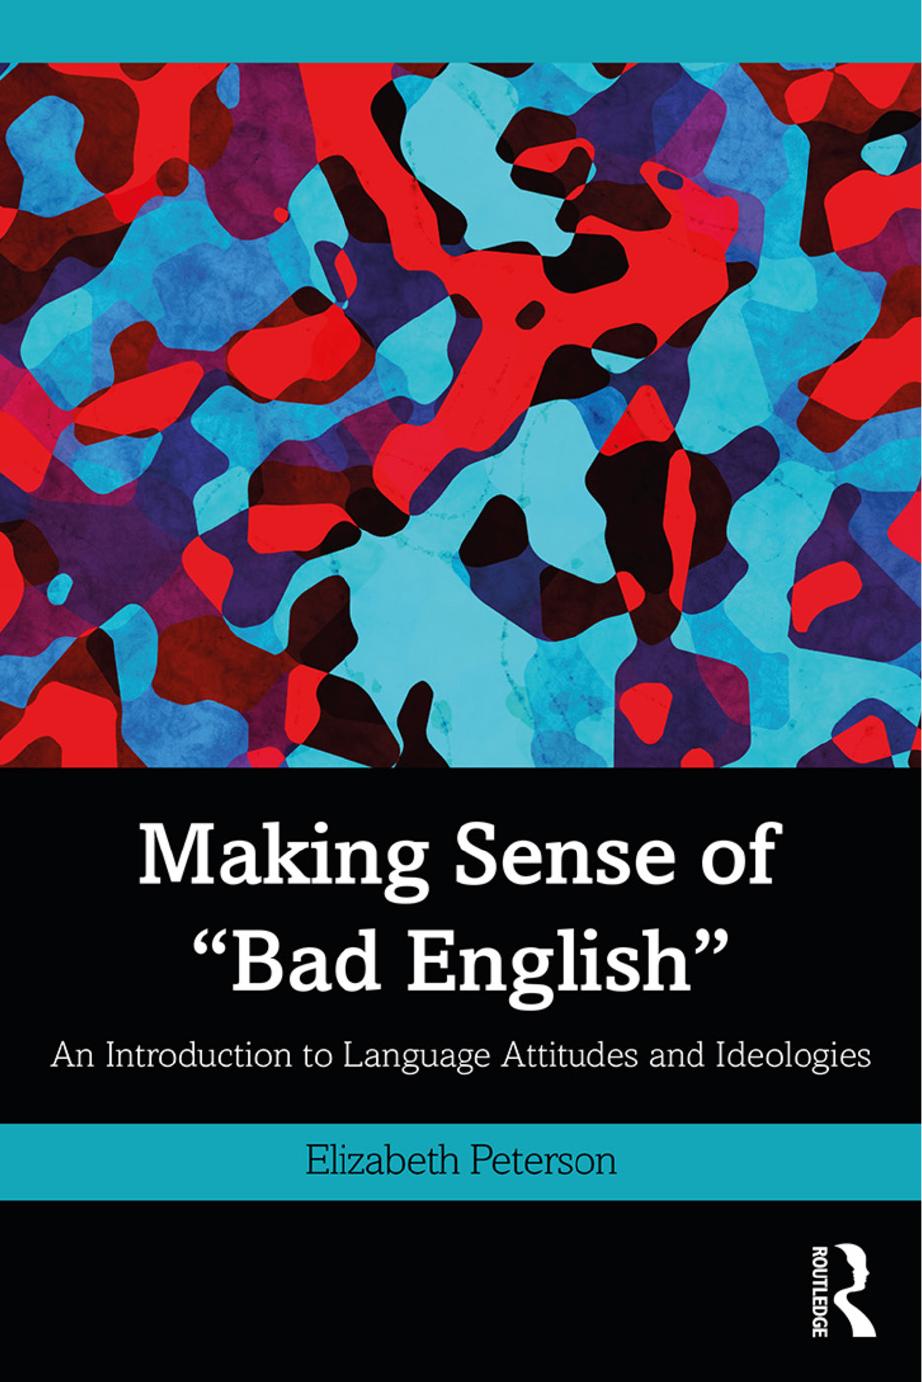 MAKING SENSE OF “BAD ENGLISH”